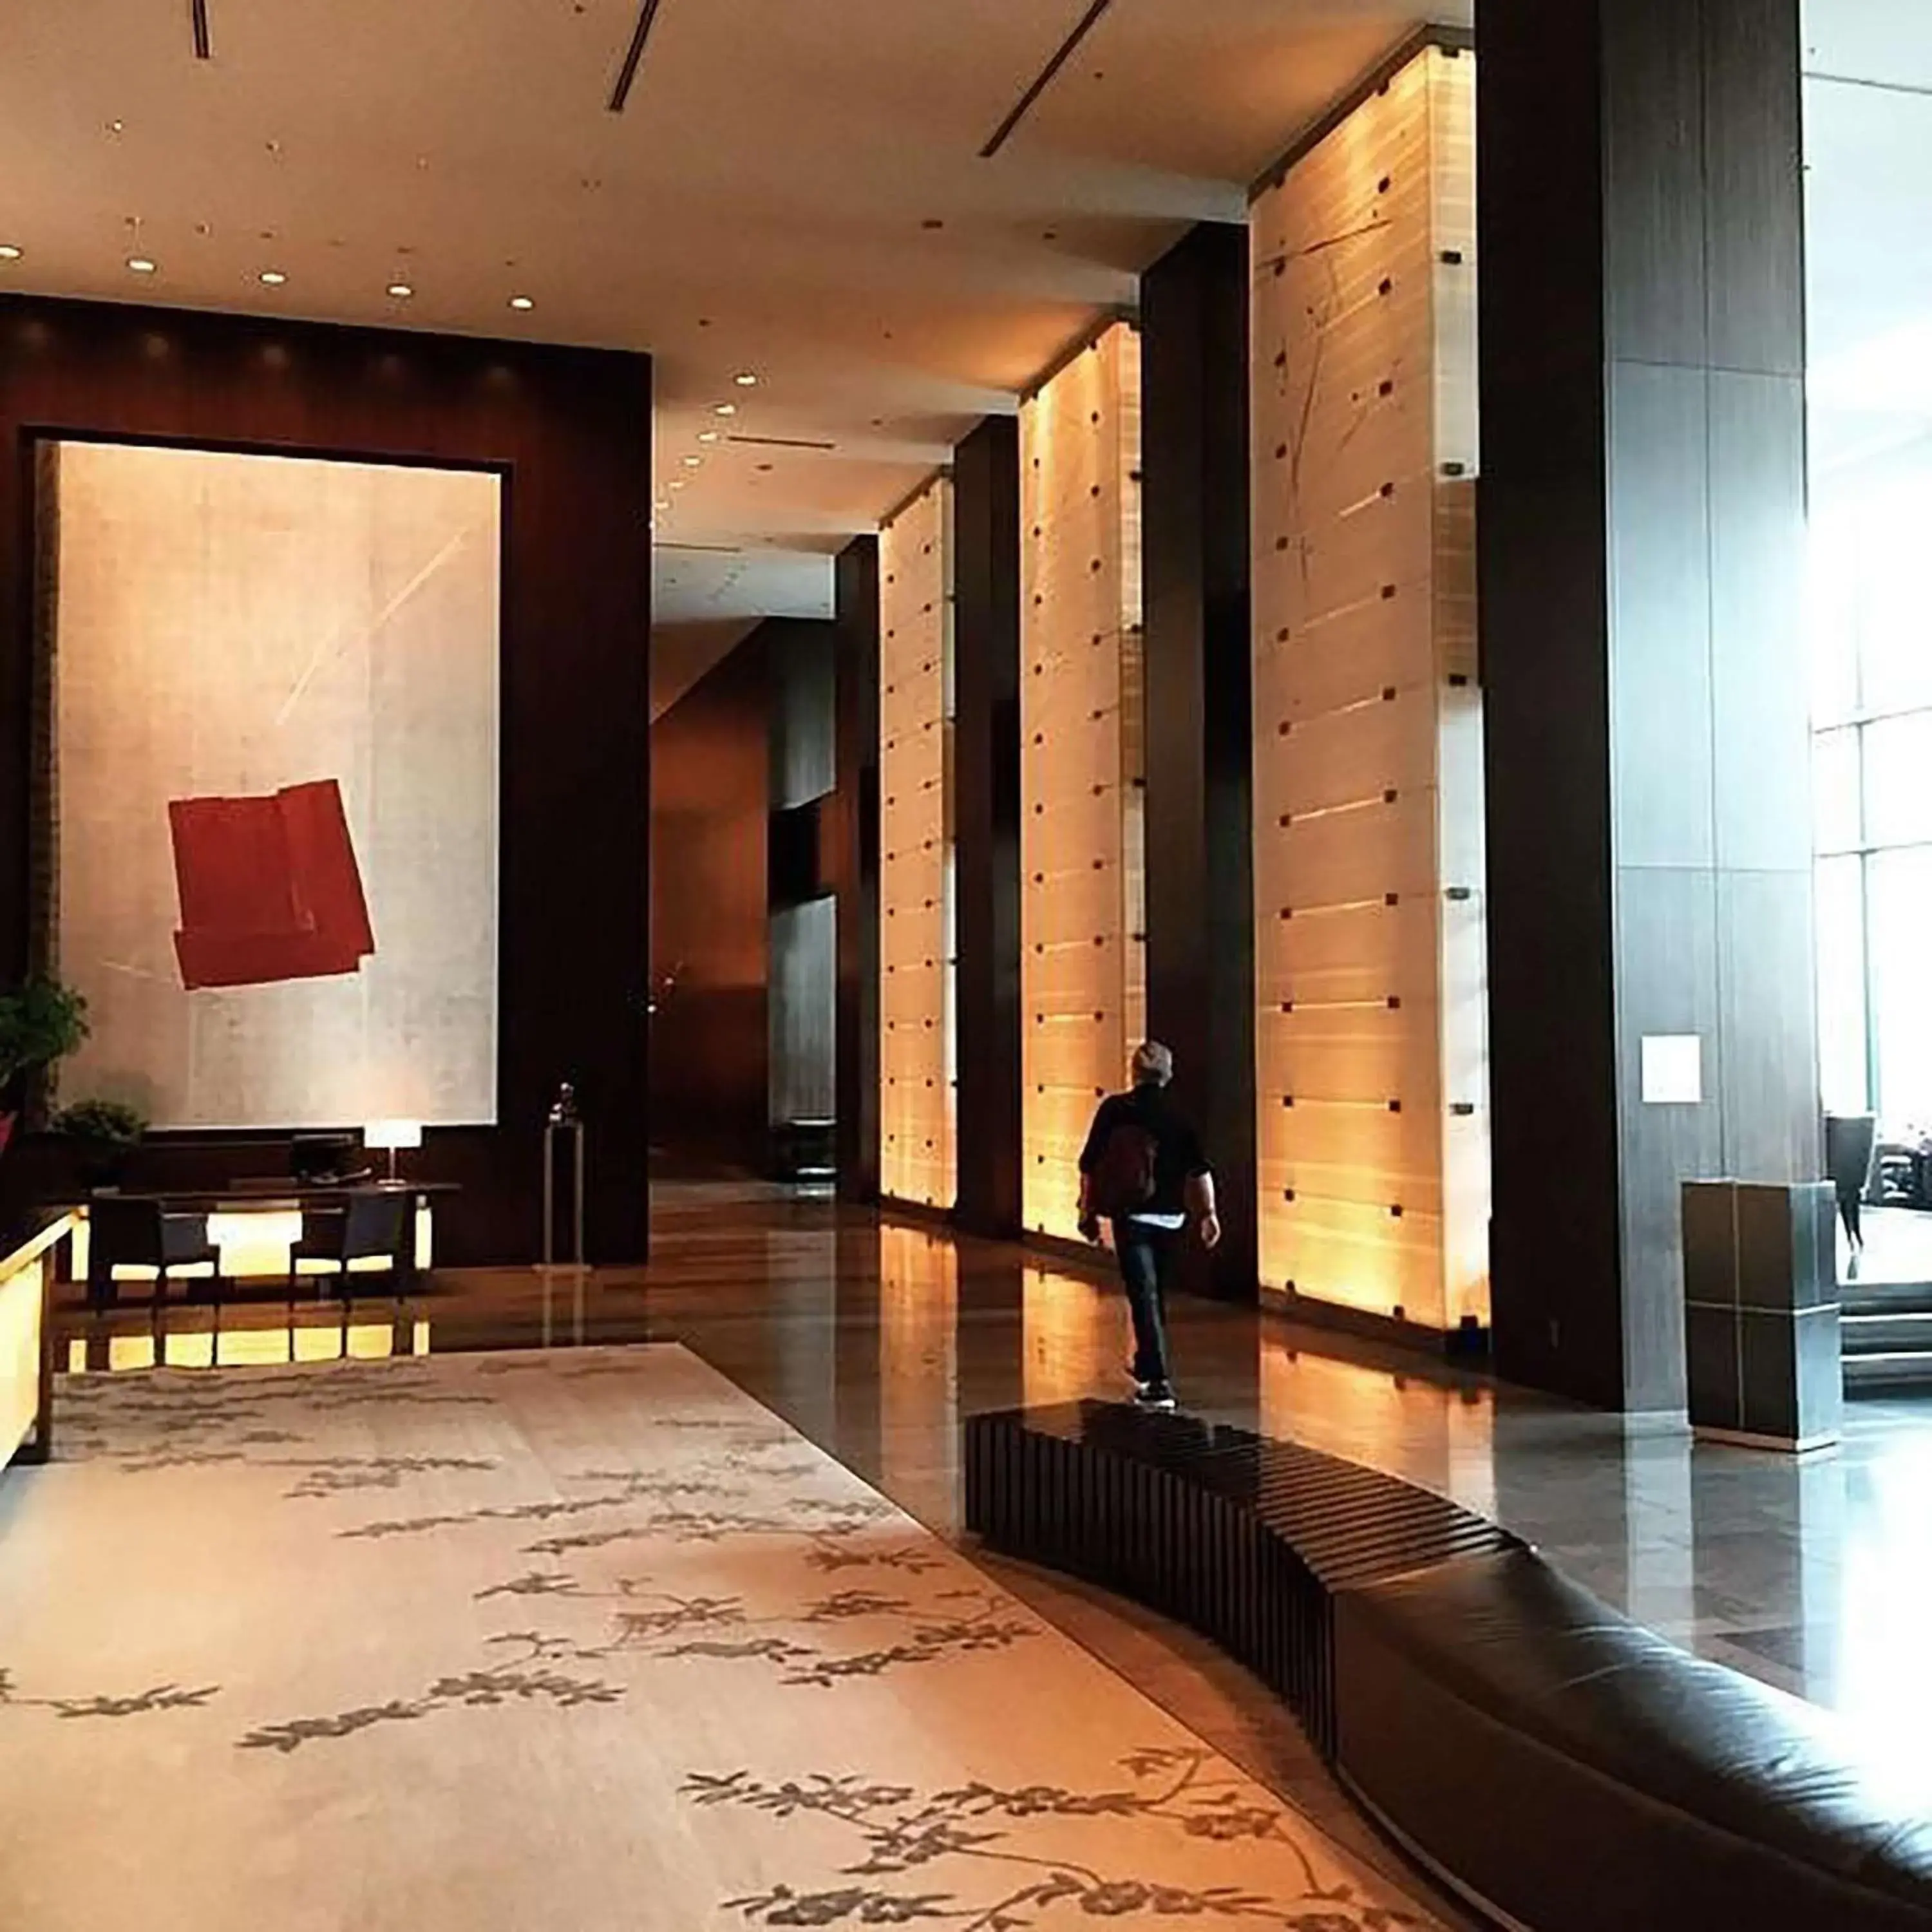 Lobby or reception in Conrad Tokyo